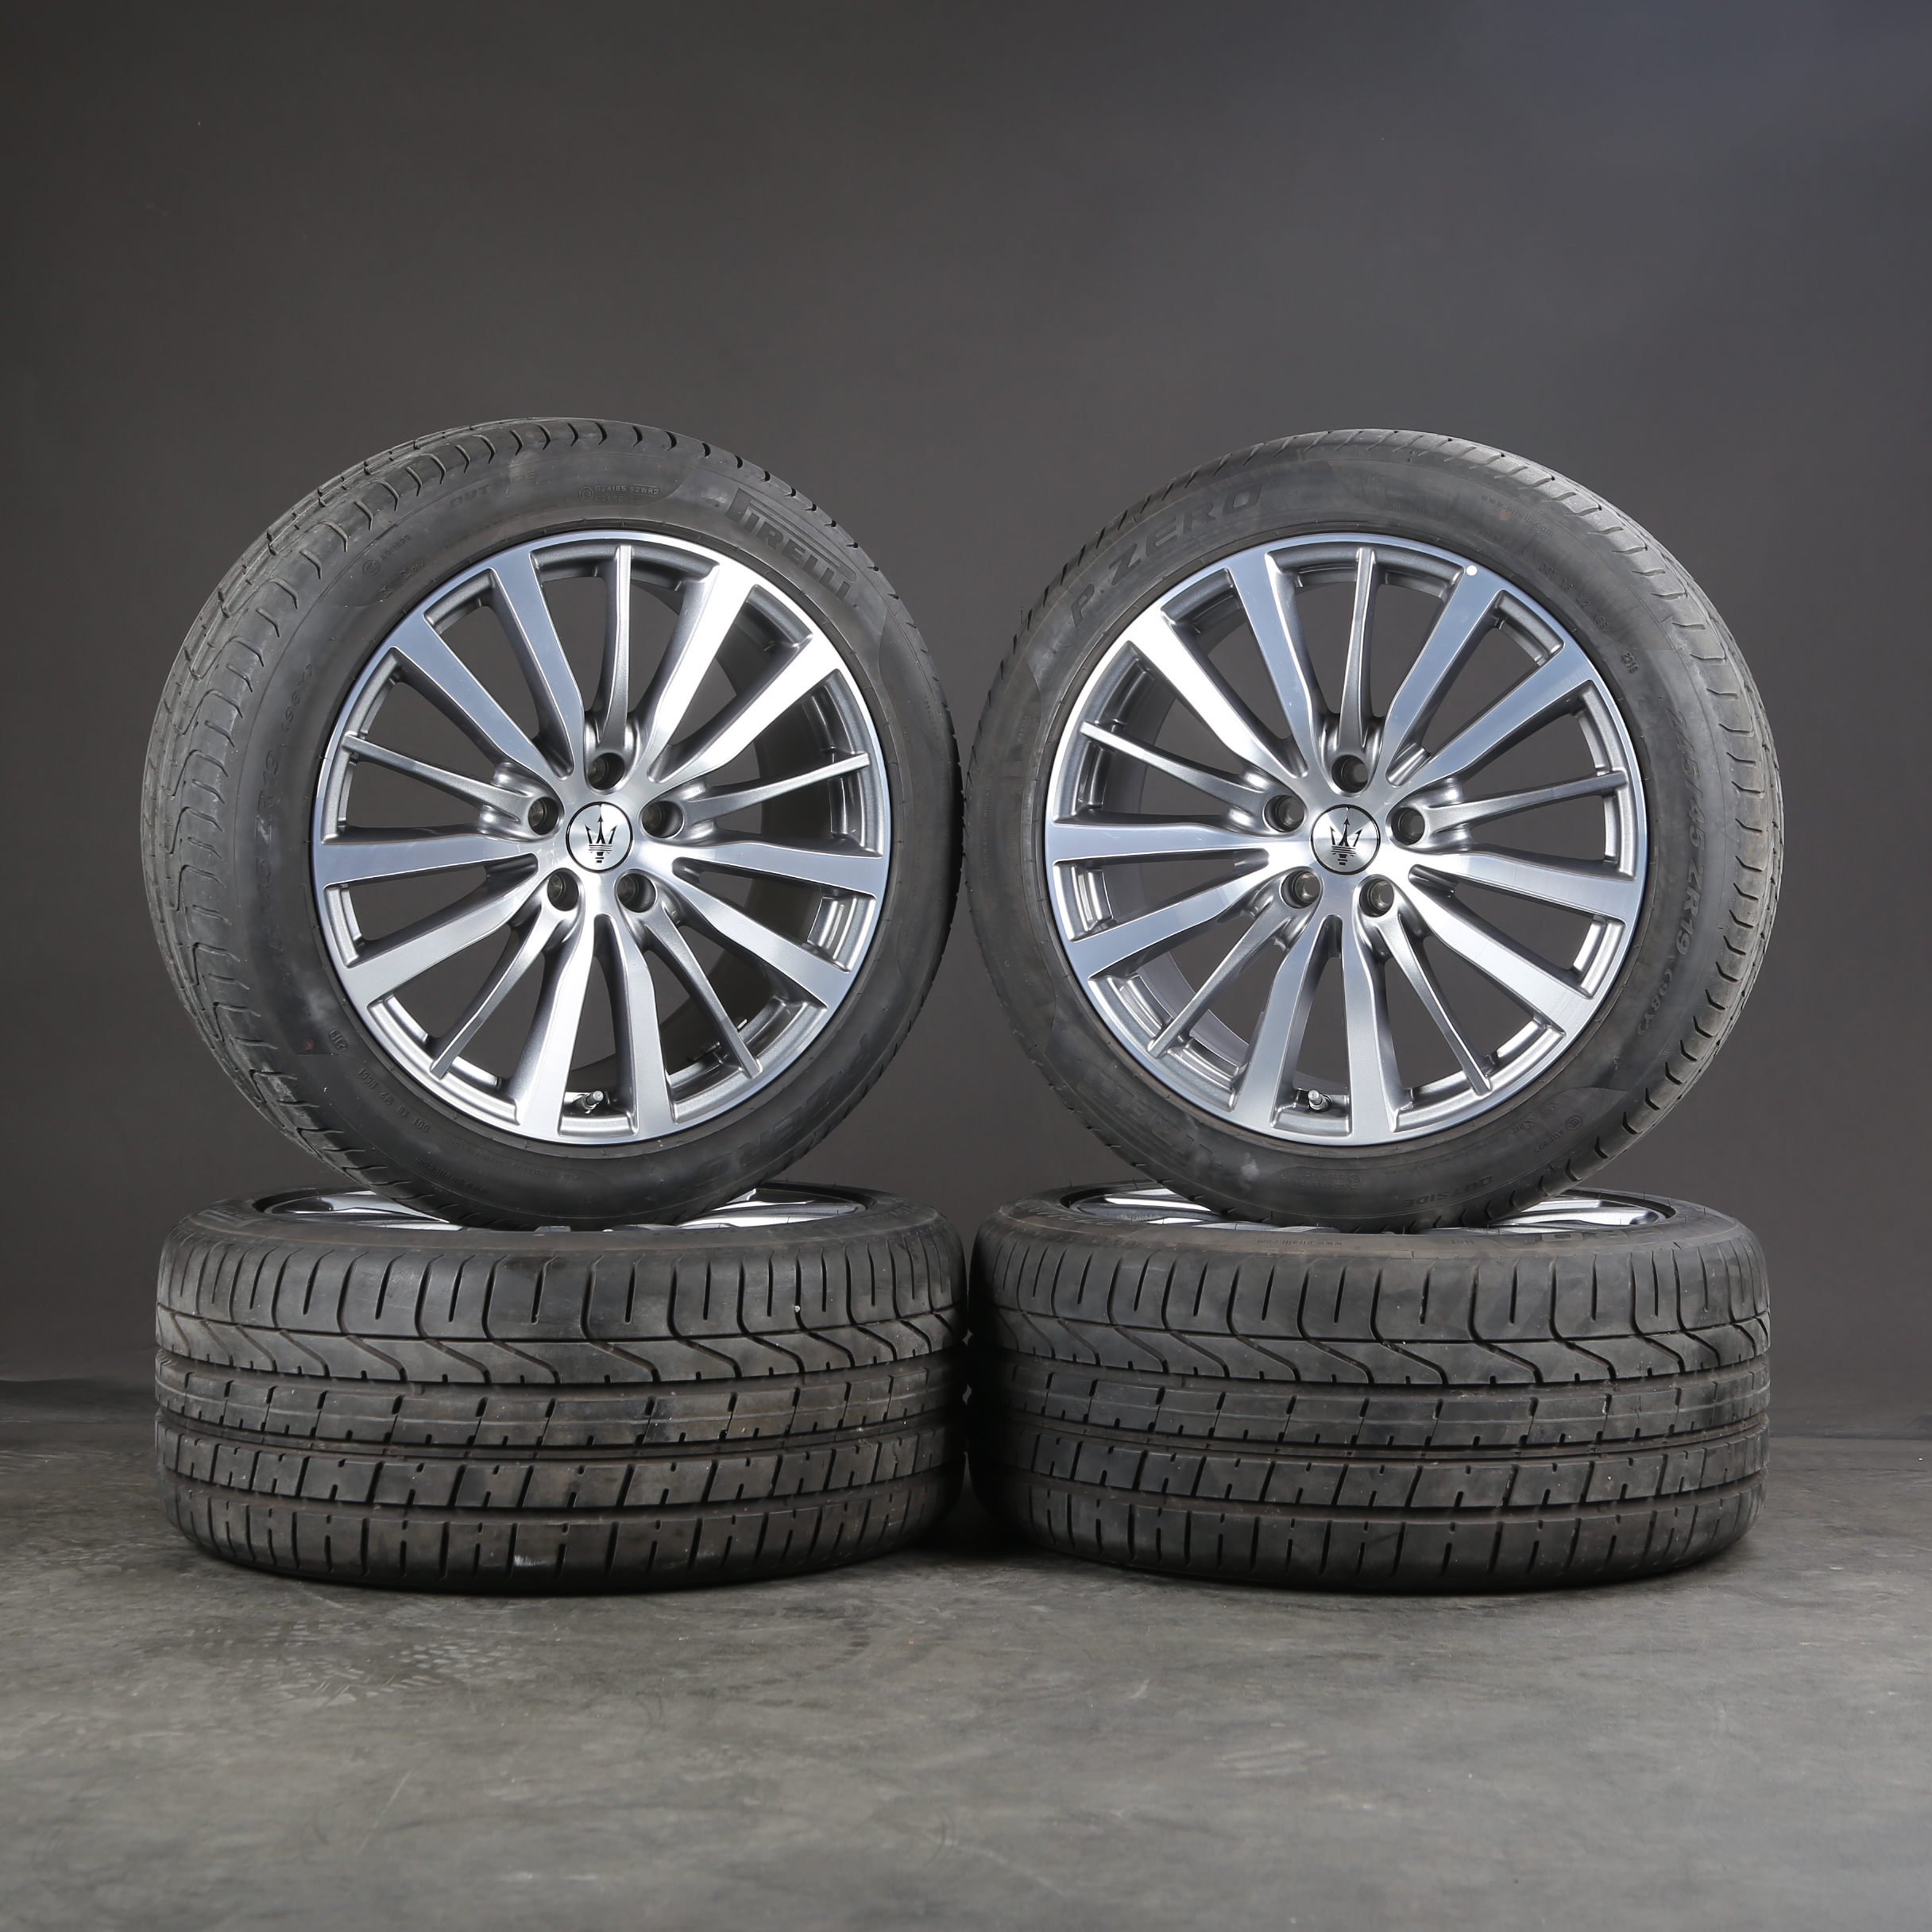 ▻ Maserati GranTurismo - Buy original wheels & rims